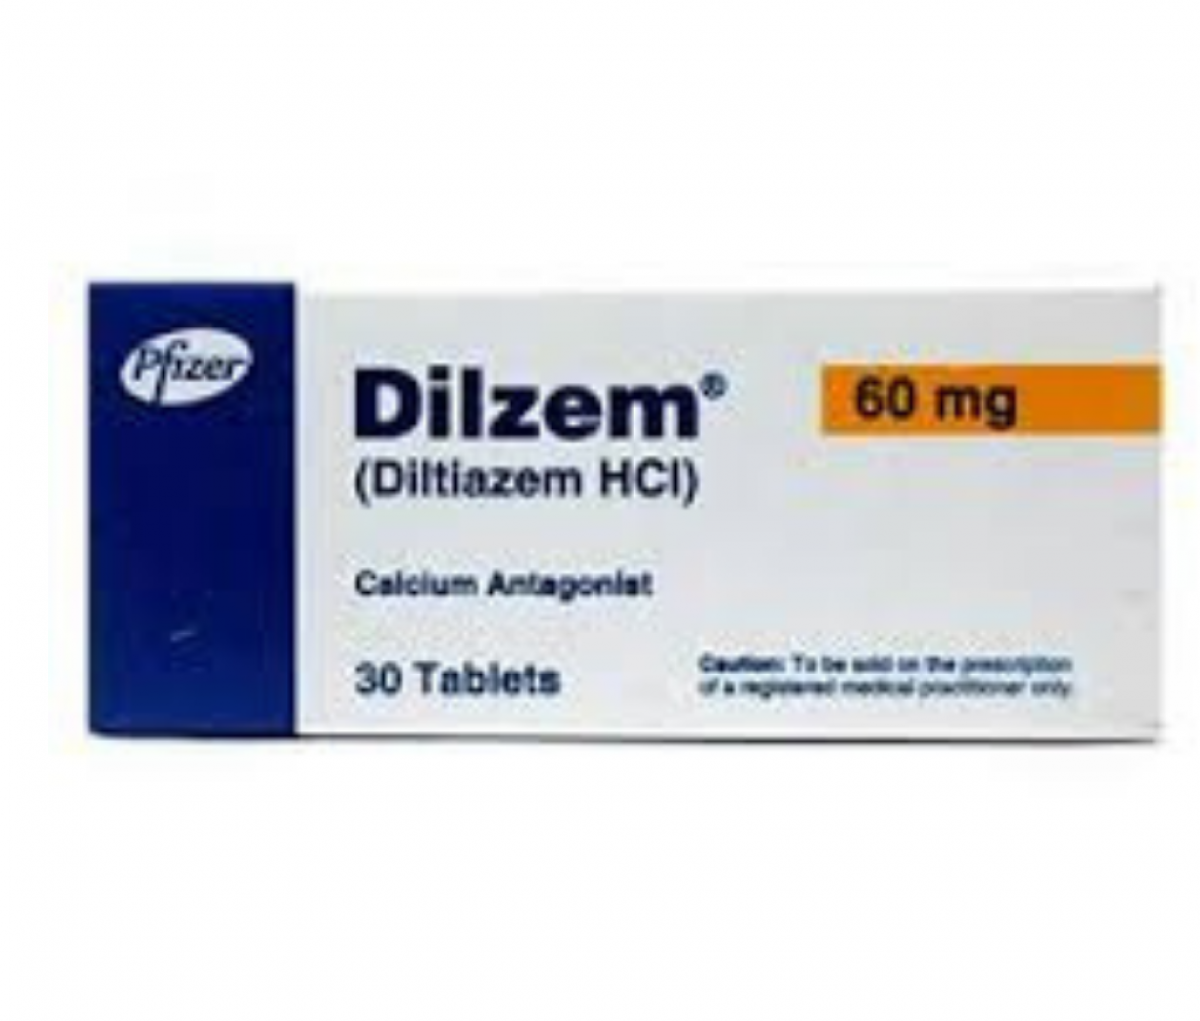 Dilzem 60mg Tablet - India